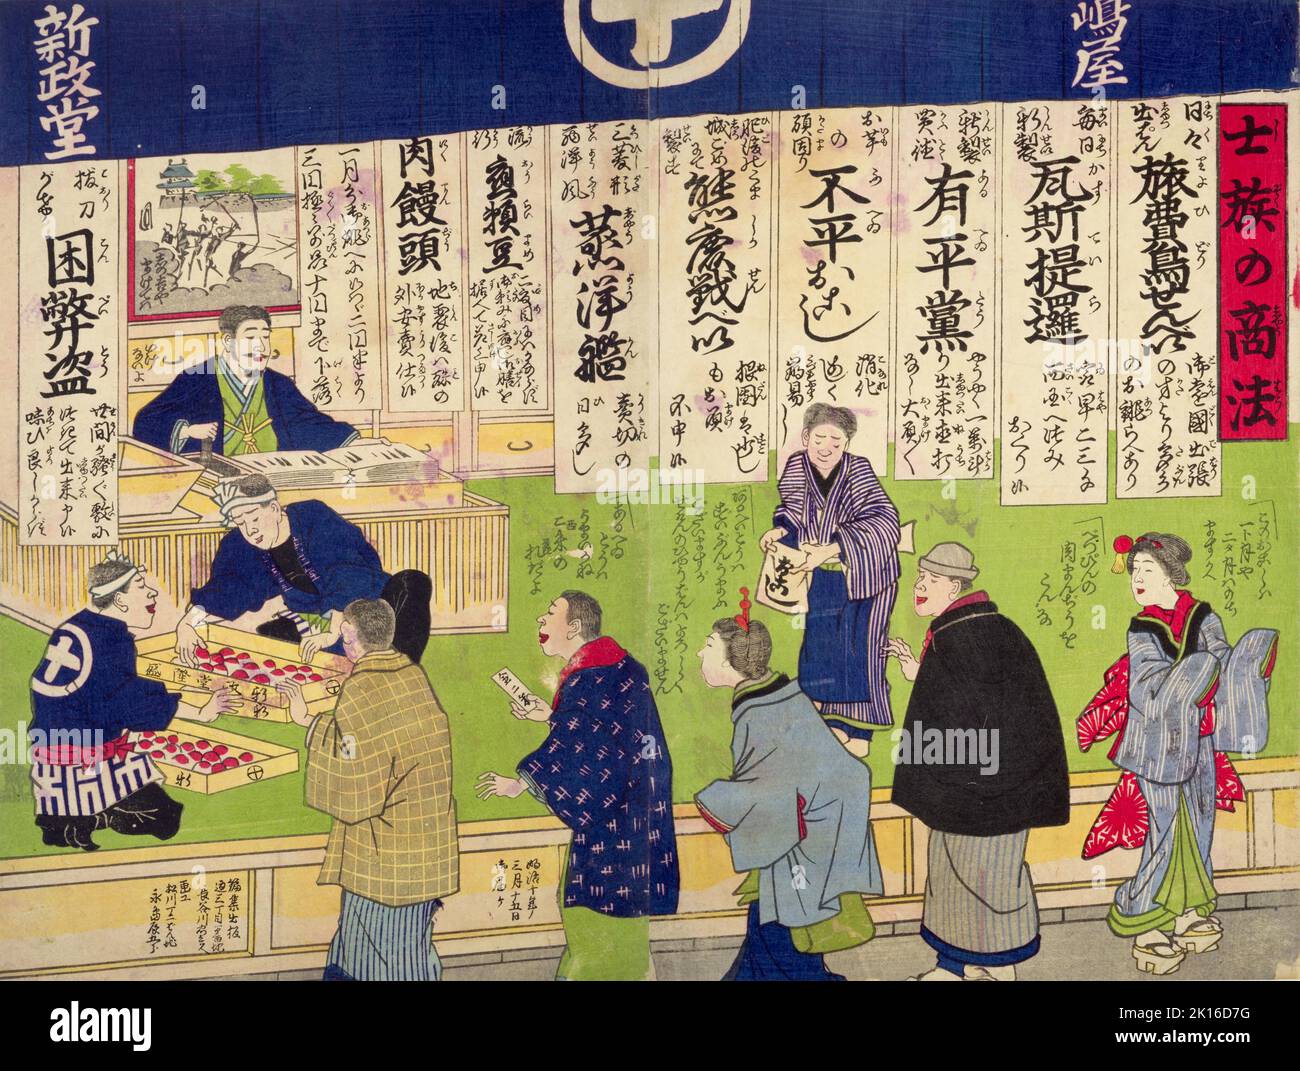 Former-samurai Way of Business, Artist Nagashima Tatsugoro (Utagawa Yoshitora), Year 1877 Stock Photo